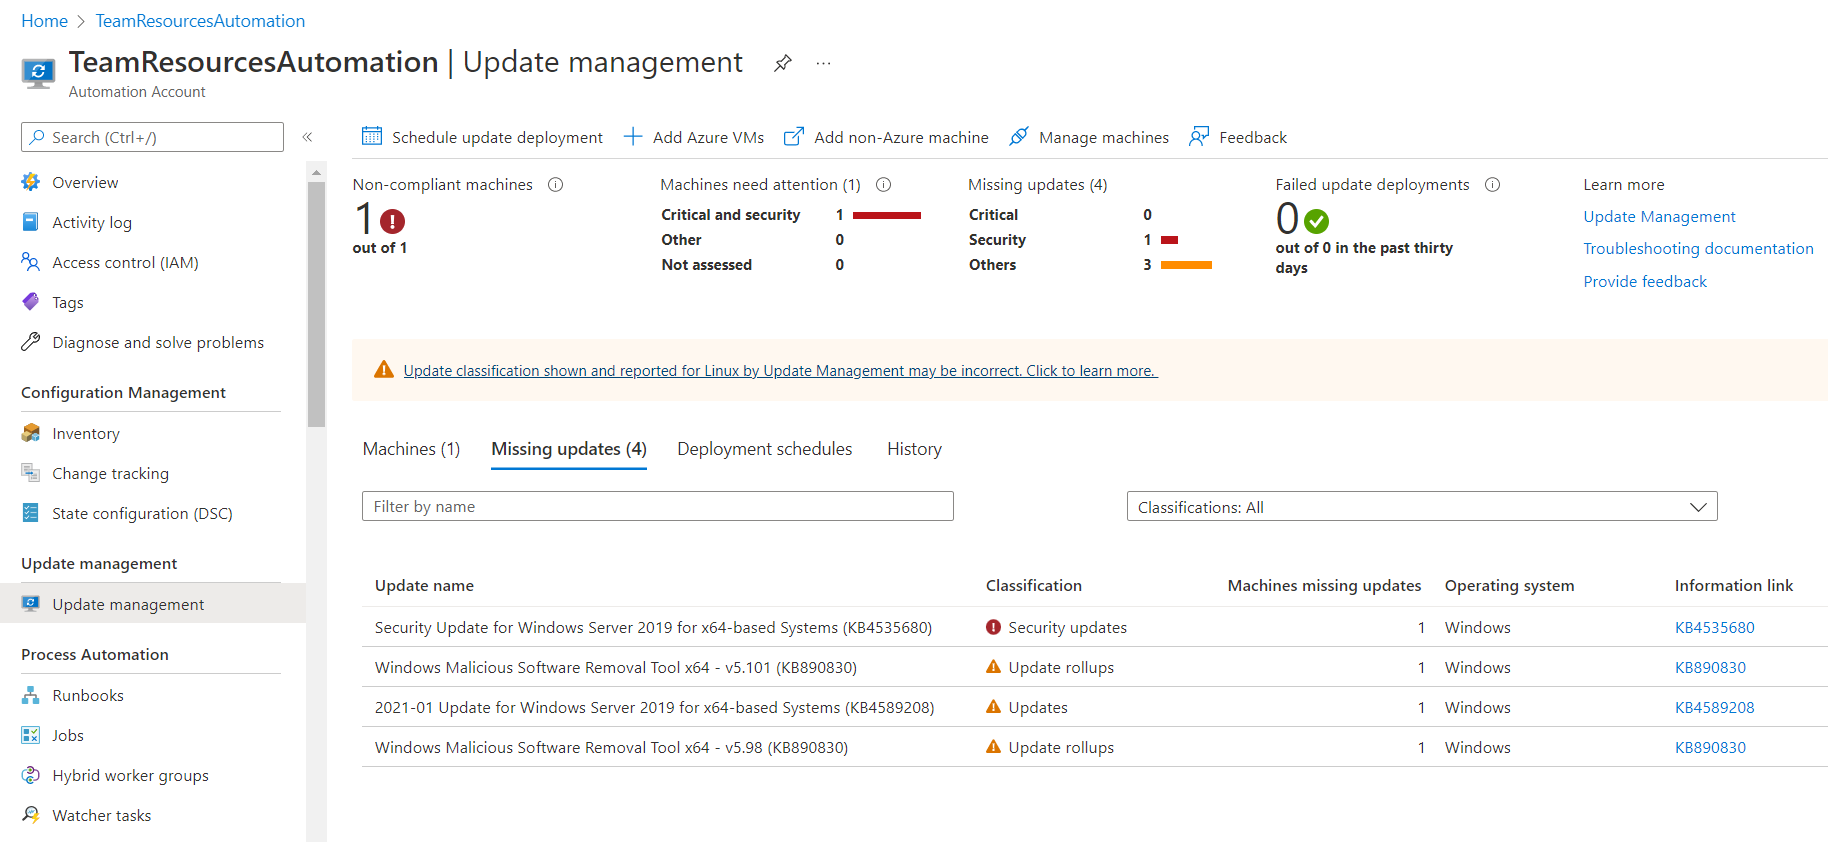 Captura de pantalla de visualización del estado de actualización de la cuenta de Automation.